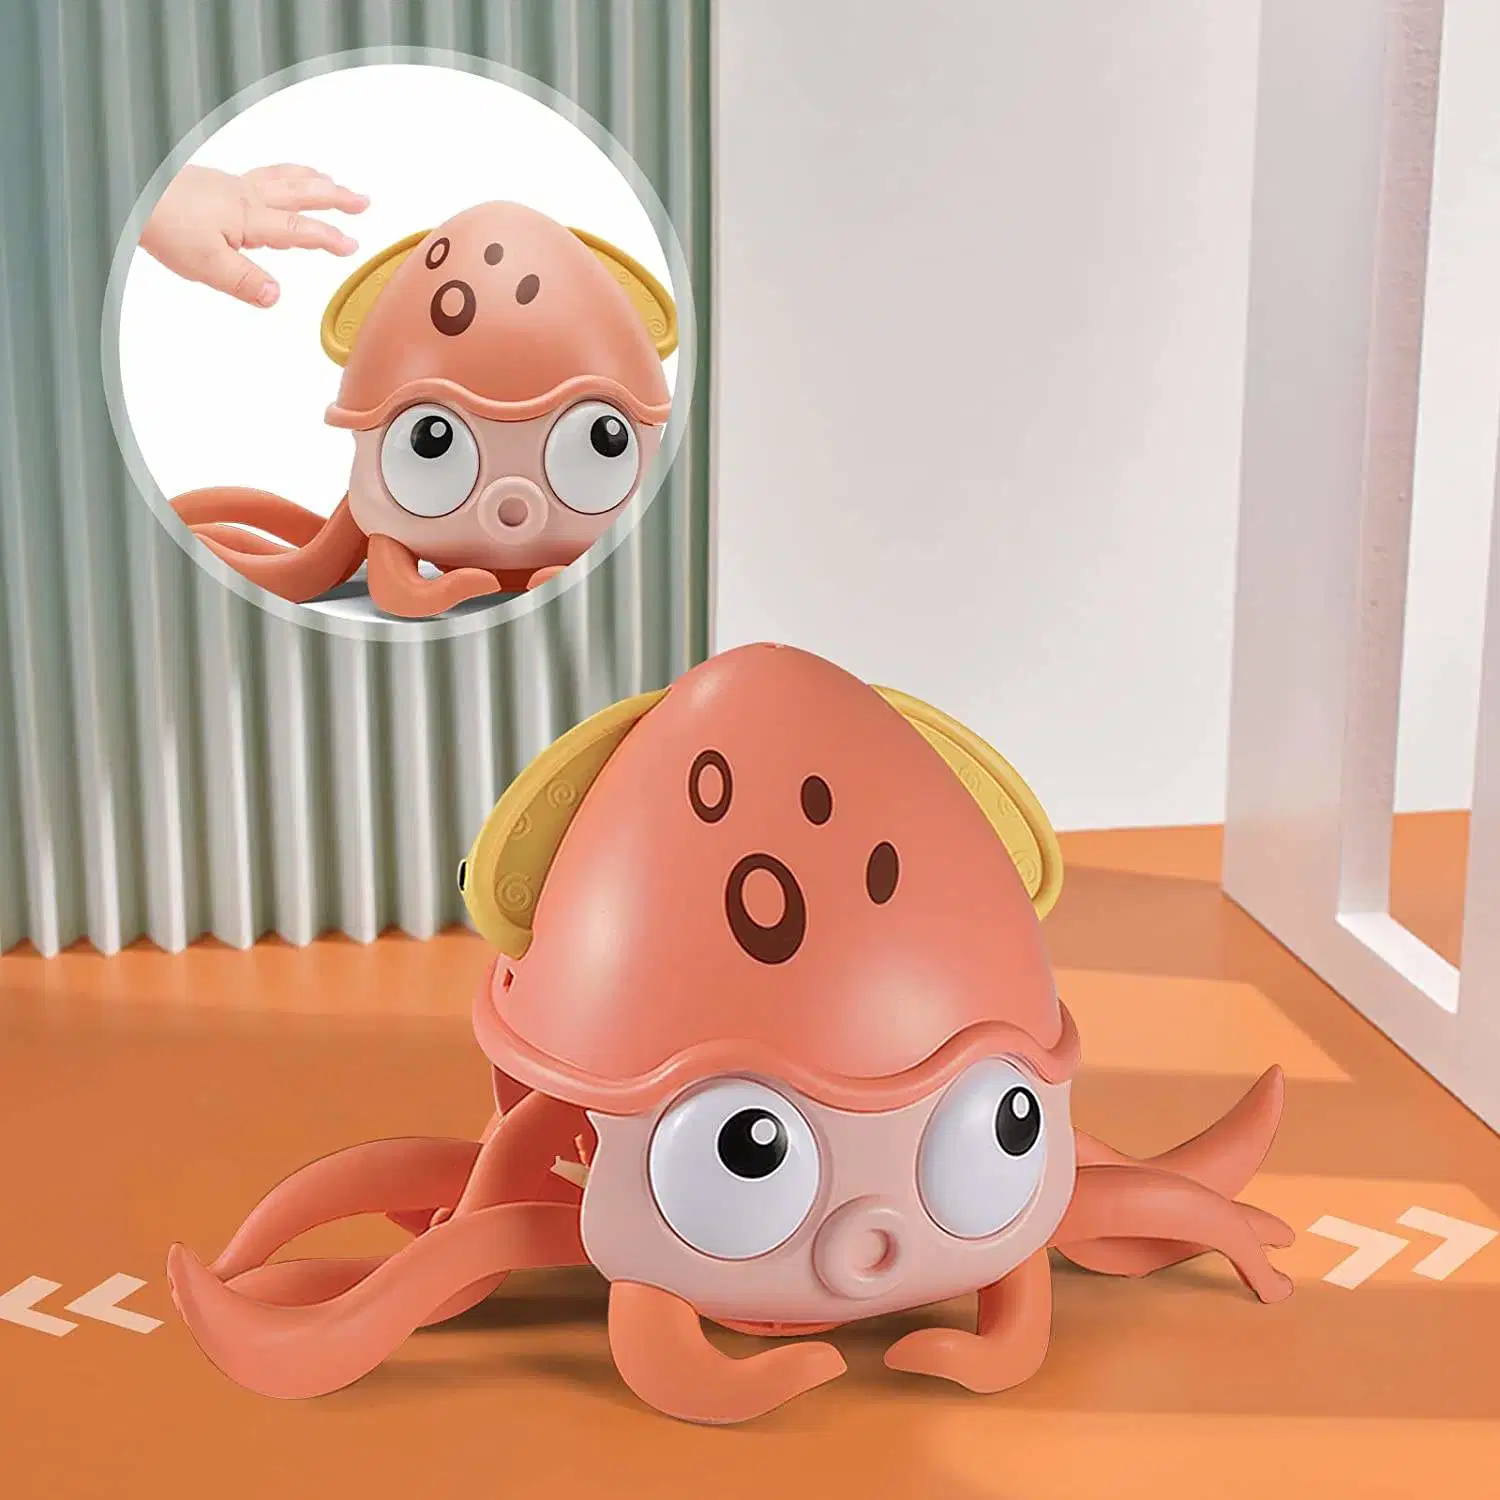 2023 Custom индукции электрического заторы осьминог ванной игрушка осьминог Dacing музыкальный сенсорных игрушки для малышей дошкольное образование игрушка